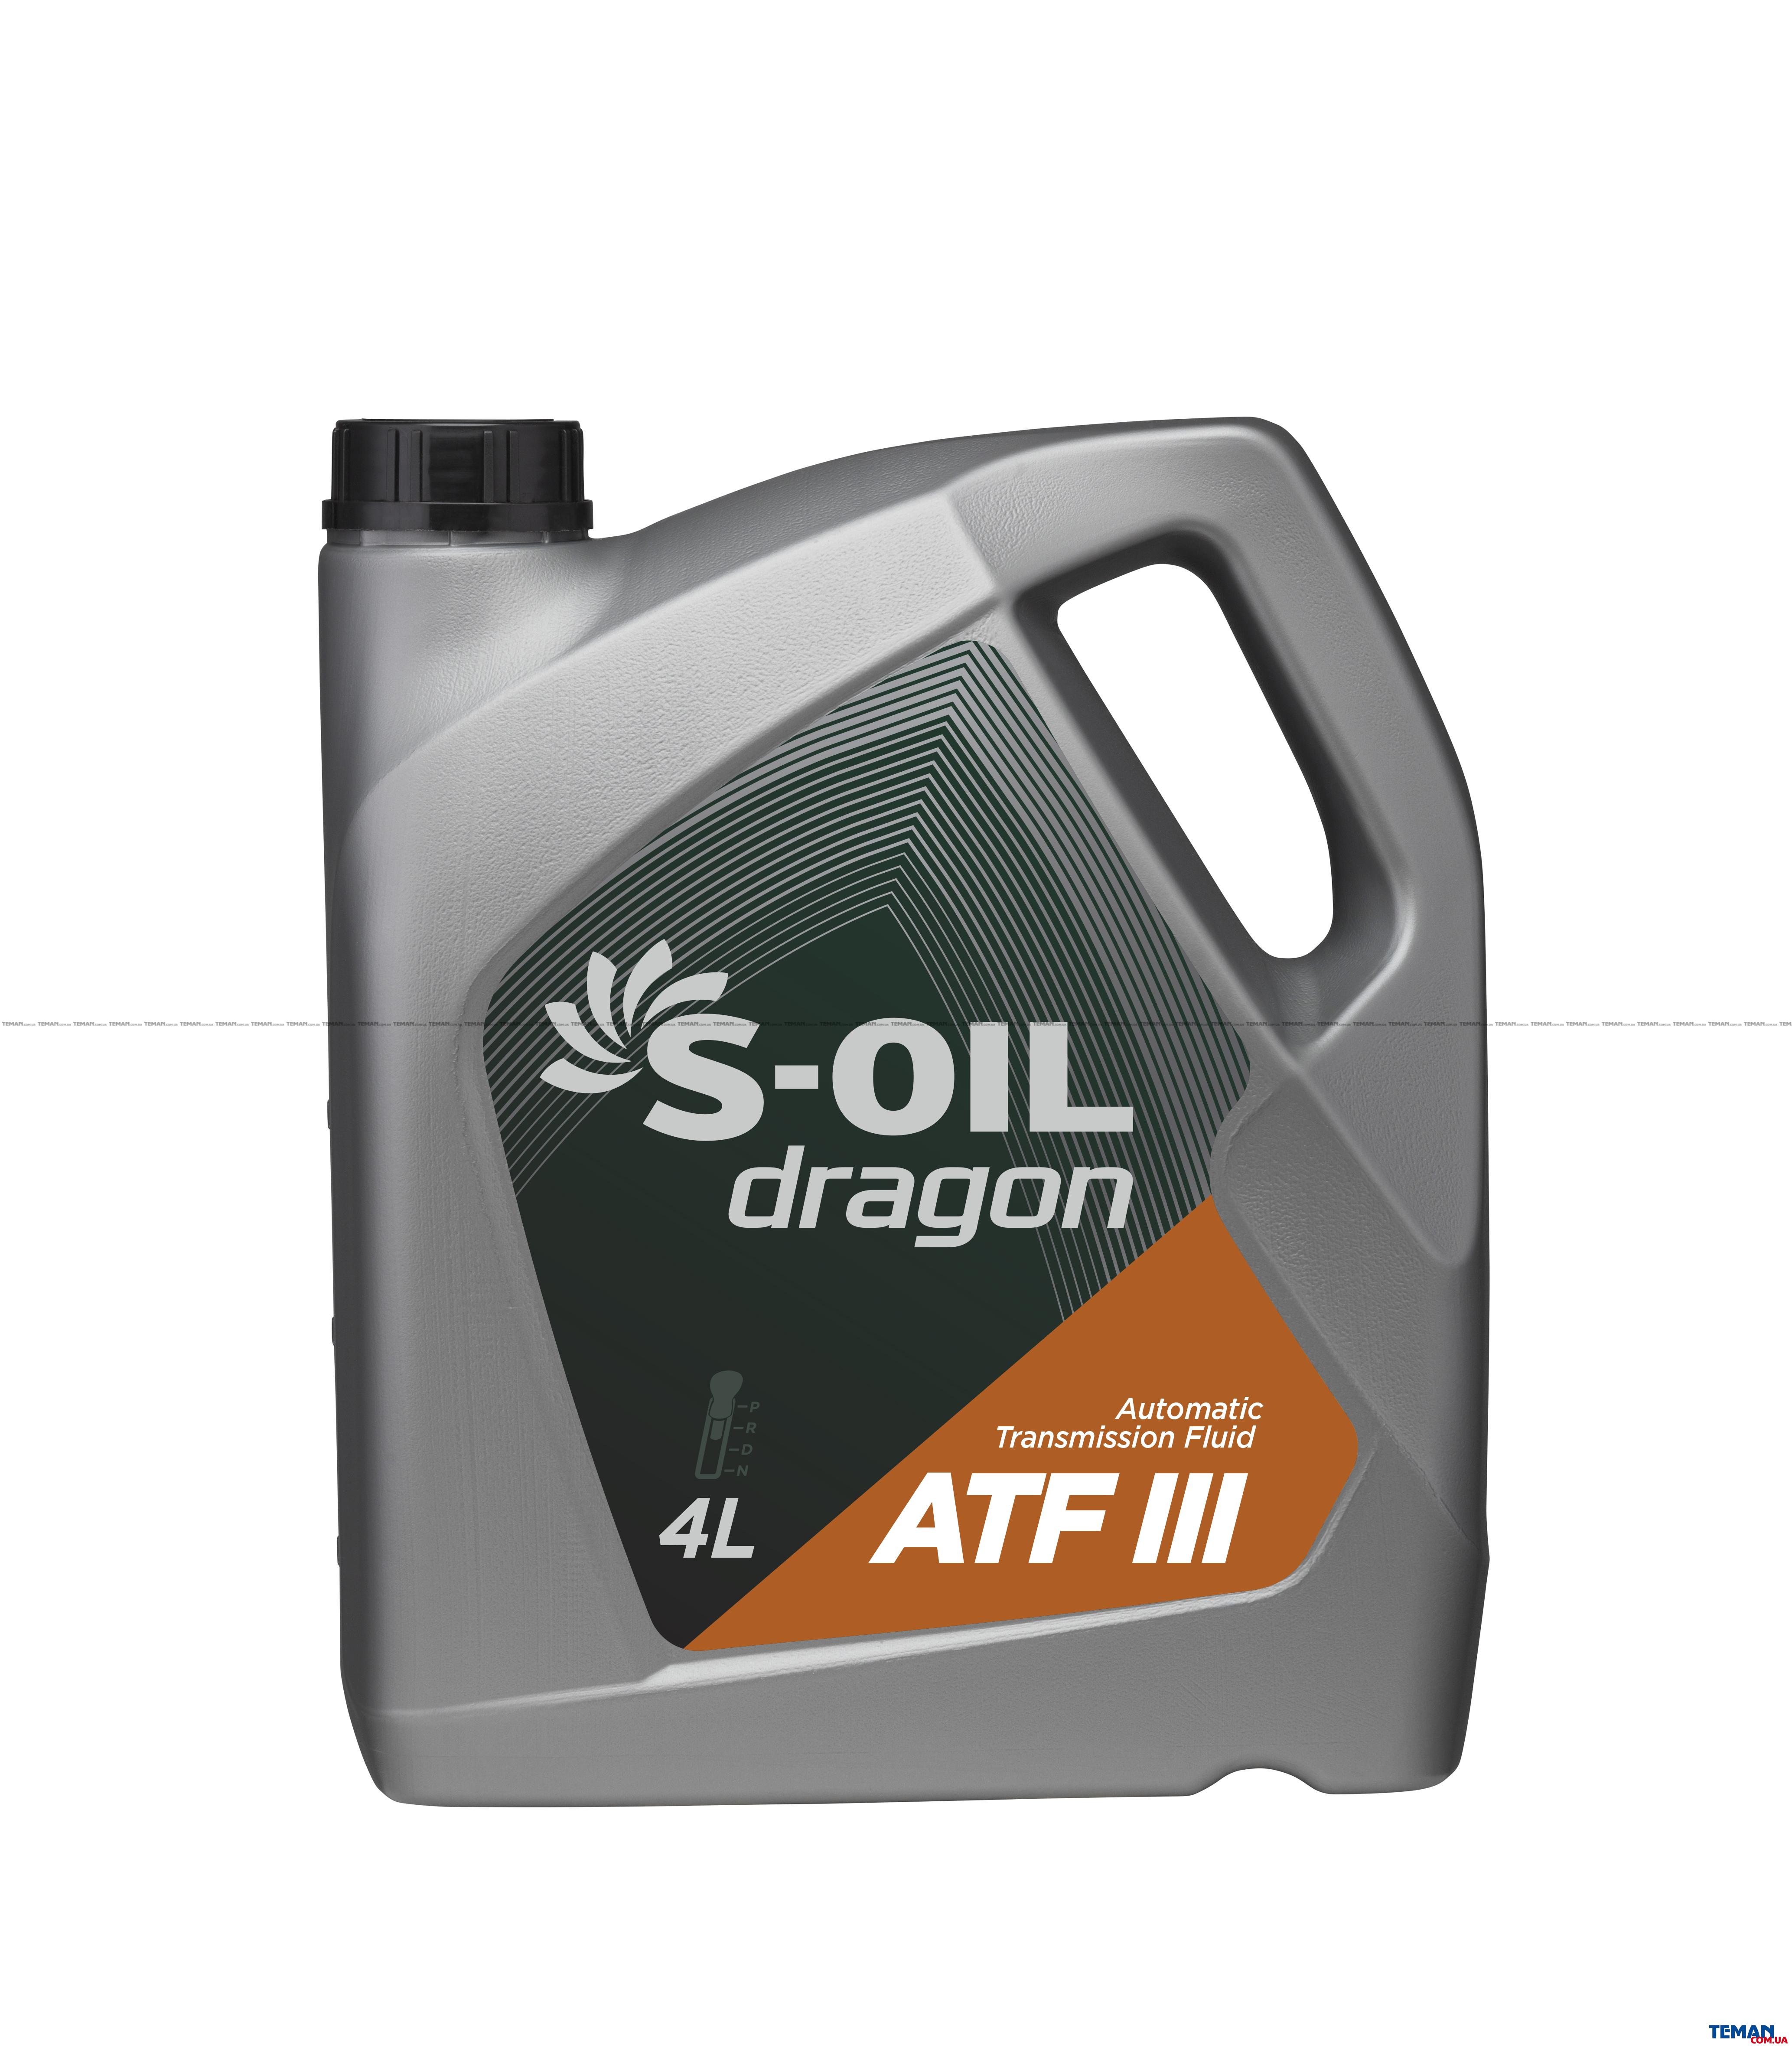  Купить Синтетическое трансмисионное масло DRAGON ATF III,4 лS-OIL DRAGONATFIII4   